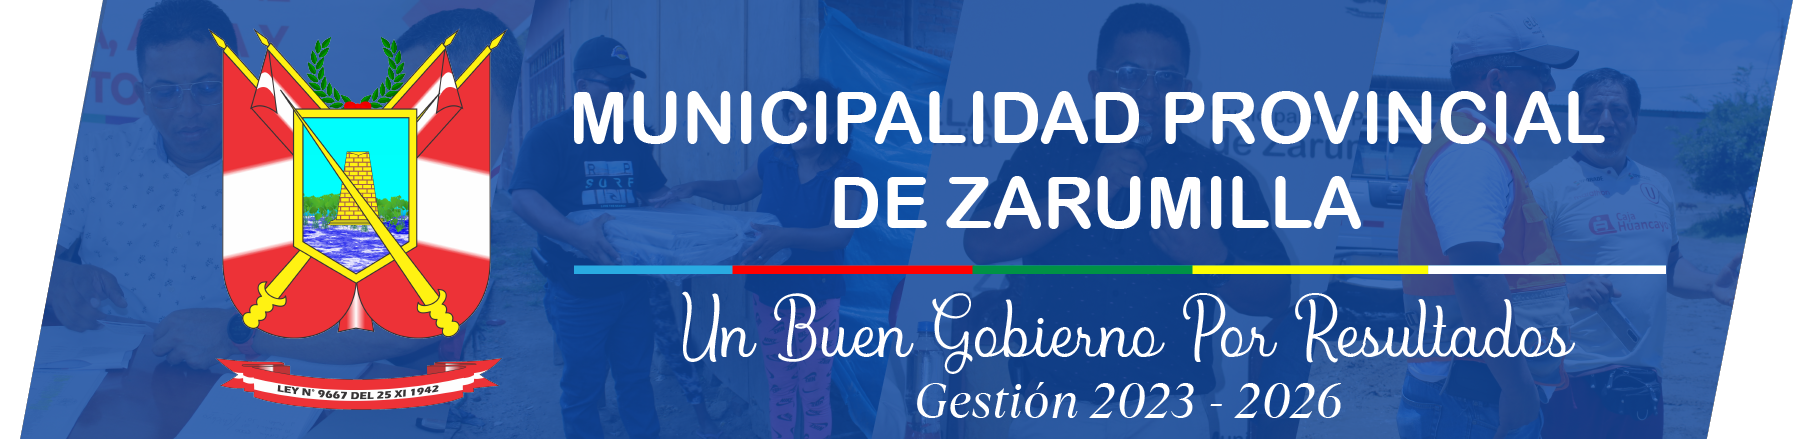 Municipalidad Provincial de Zarumilla